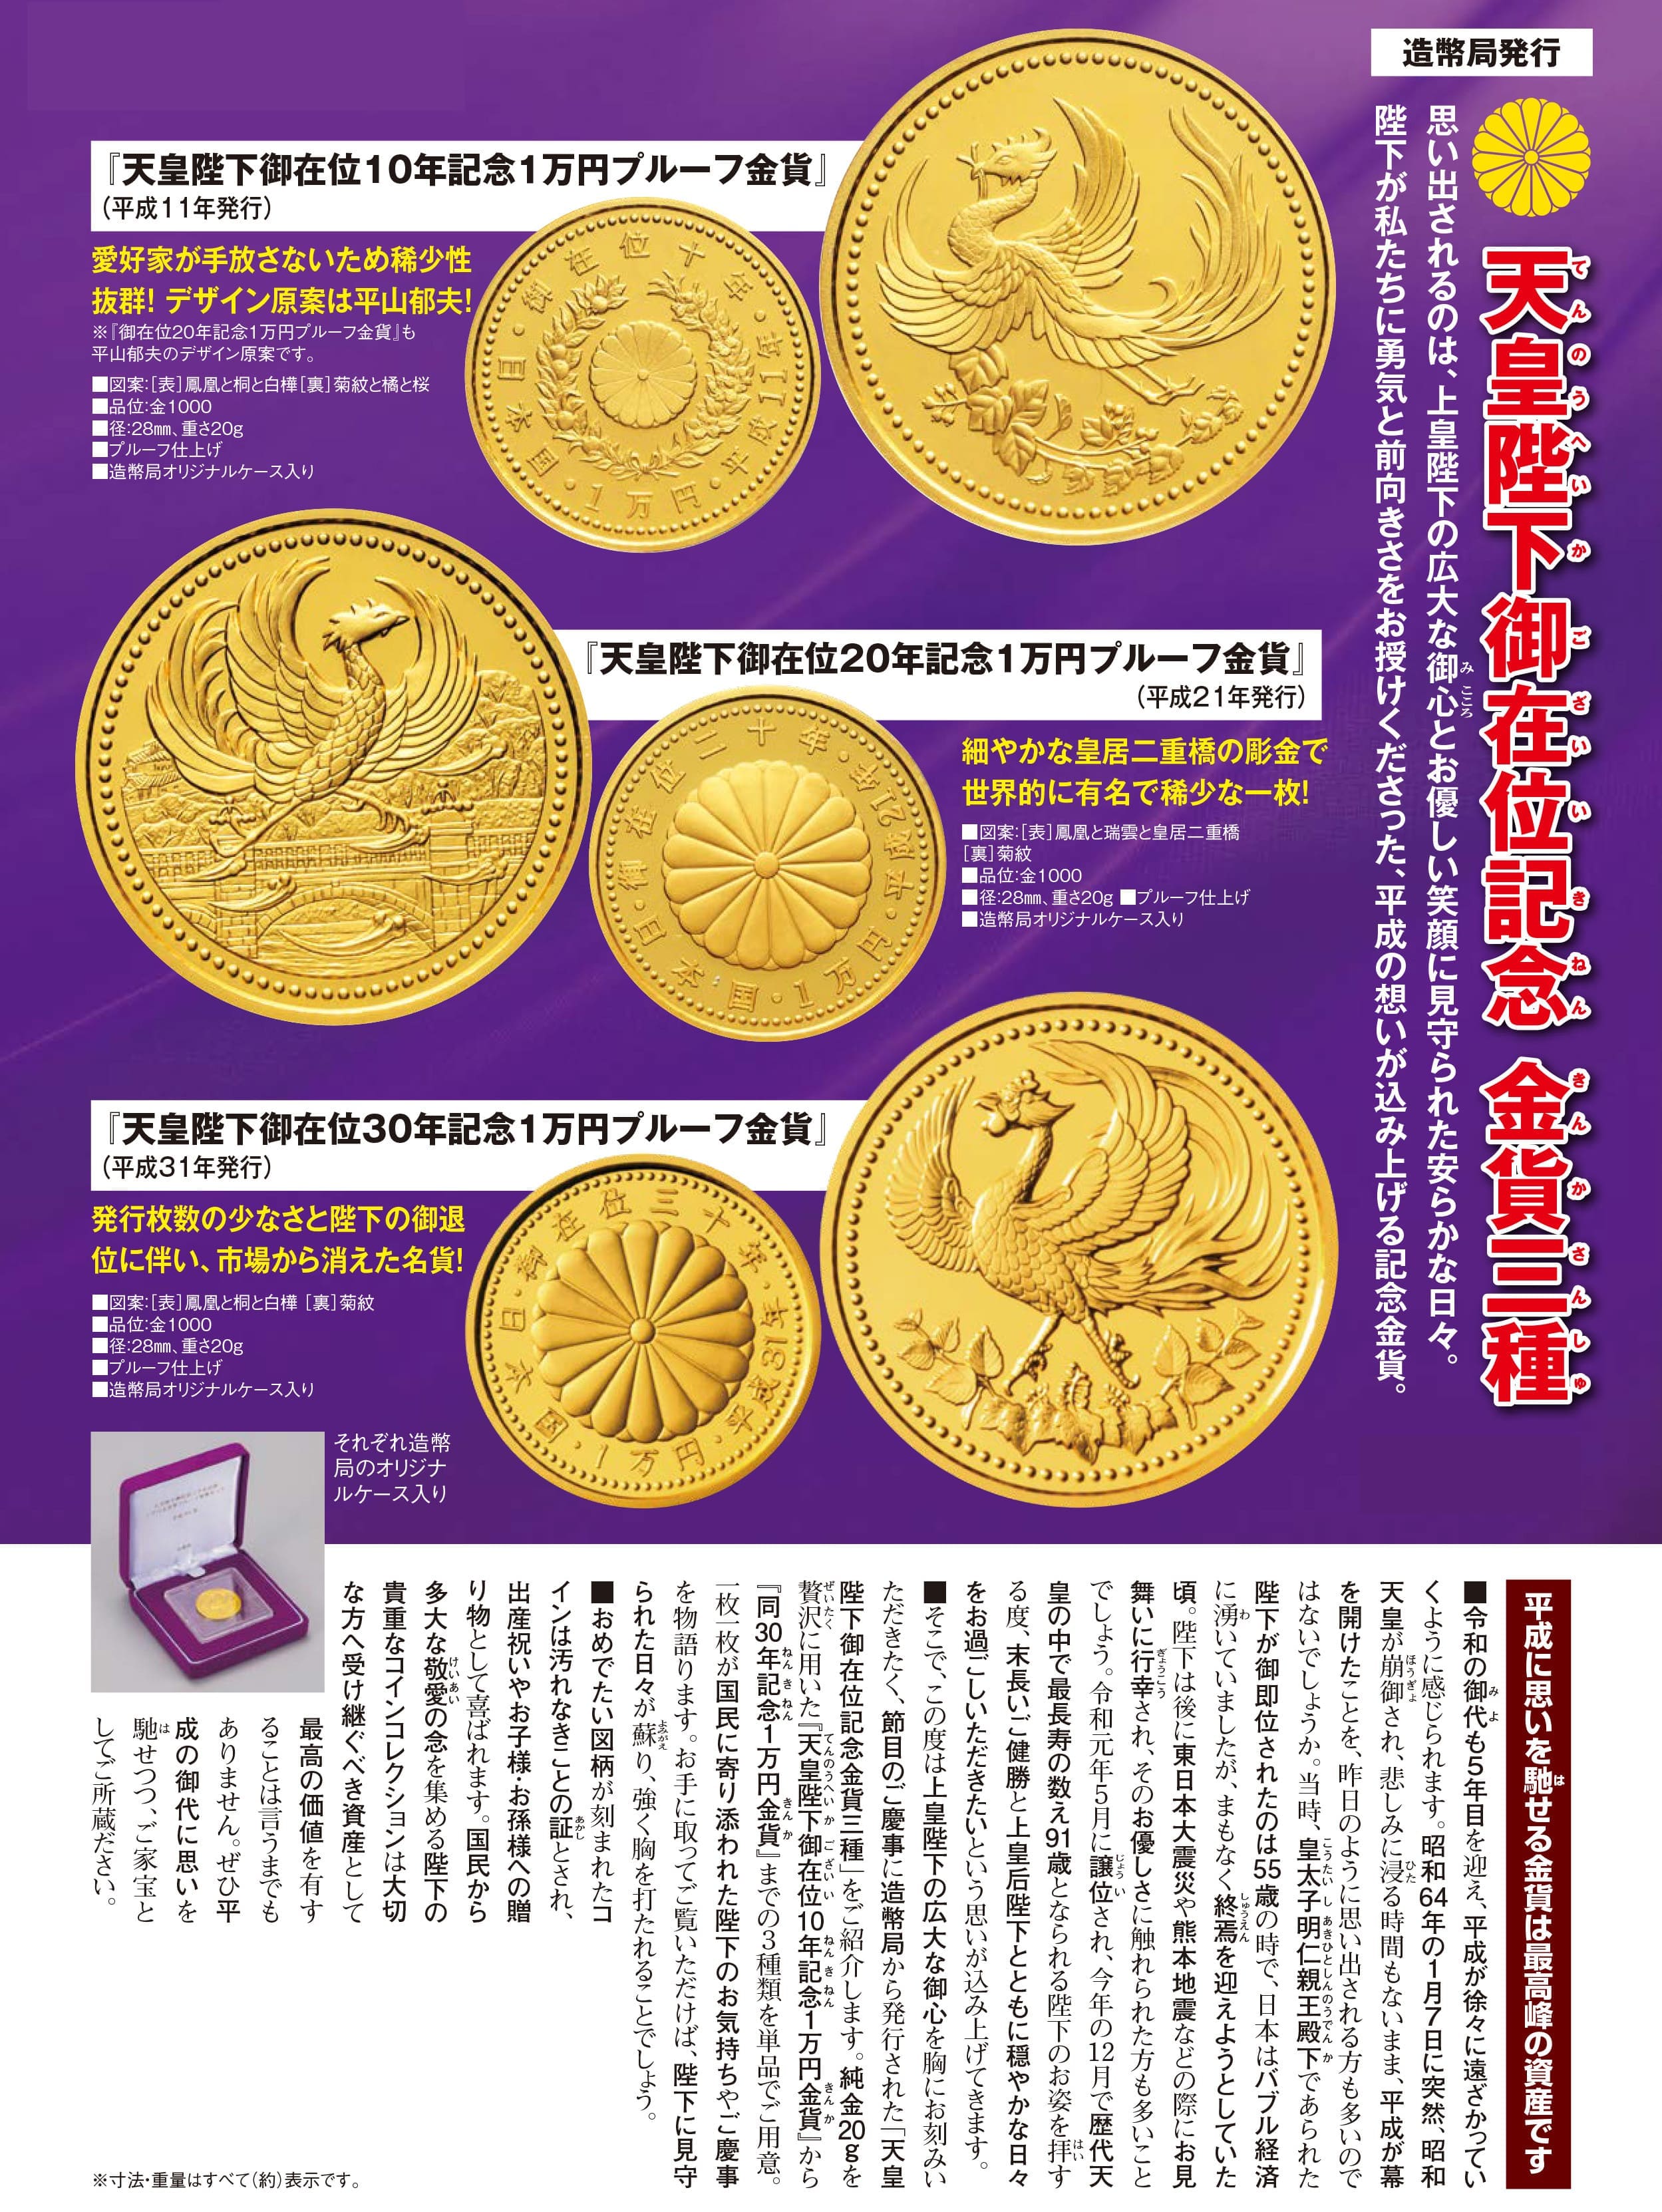 天皇陛下御在位10年記念1万円プルーフ金貨』 | 東京書芸館公式通販